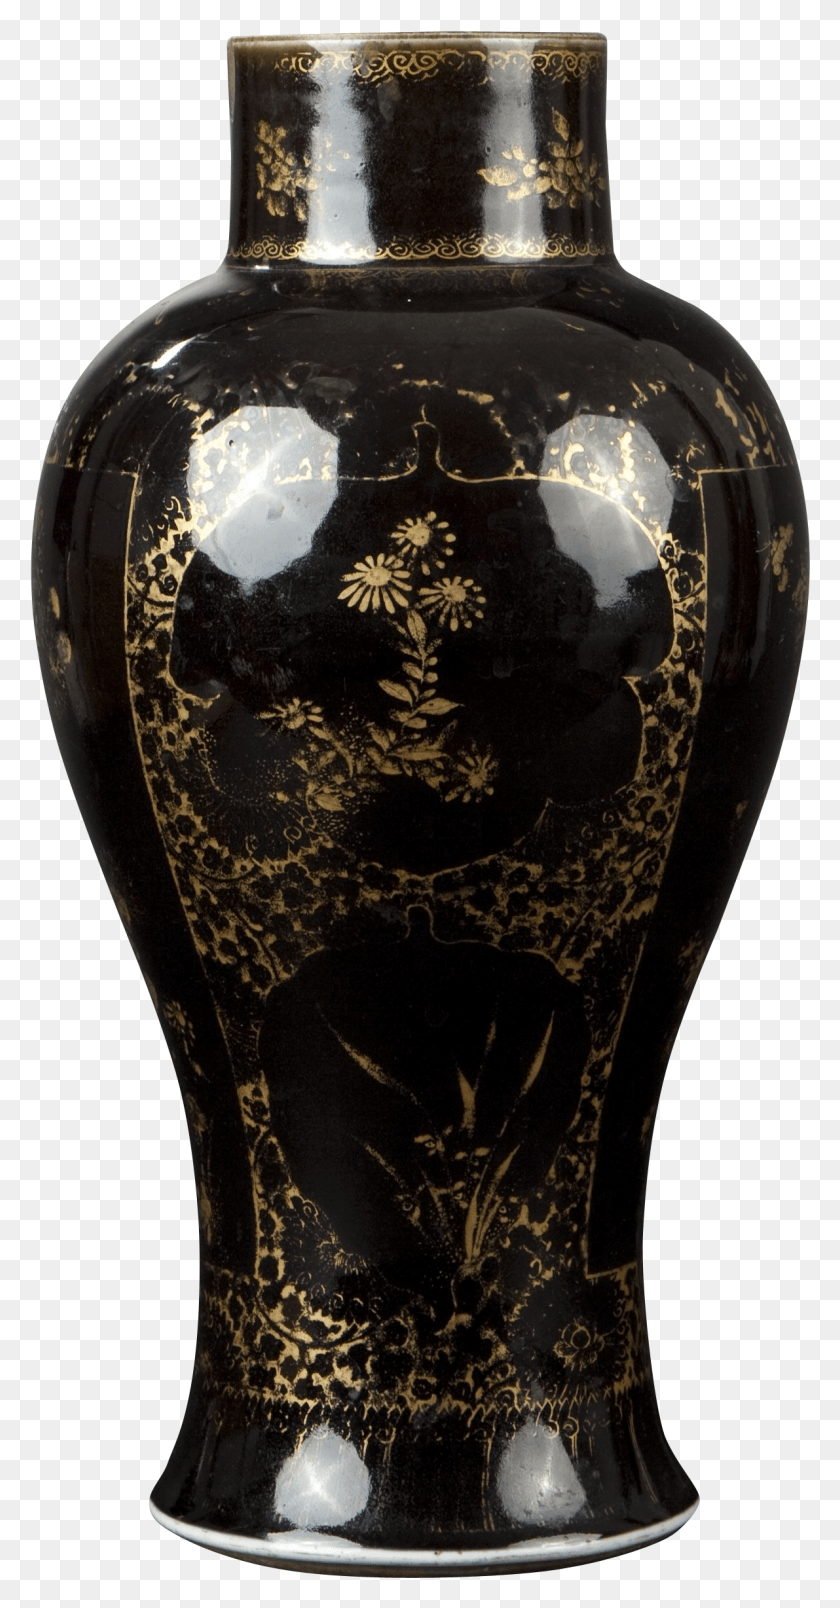 1191x2364 A Chinese Porcelain Black Mirror Glazed Vase Balustre Blue And White Porcelain, Jar, Pottery, Urn Descargar Hd Png